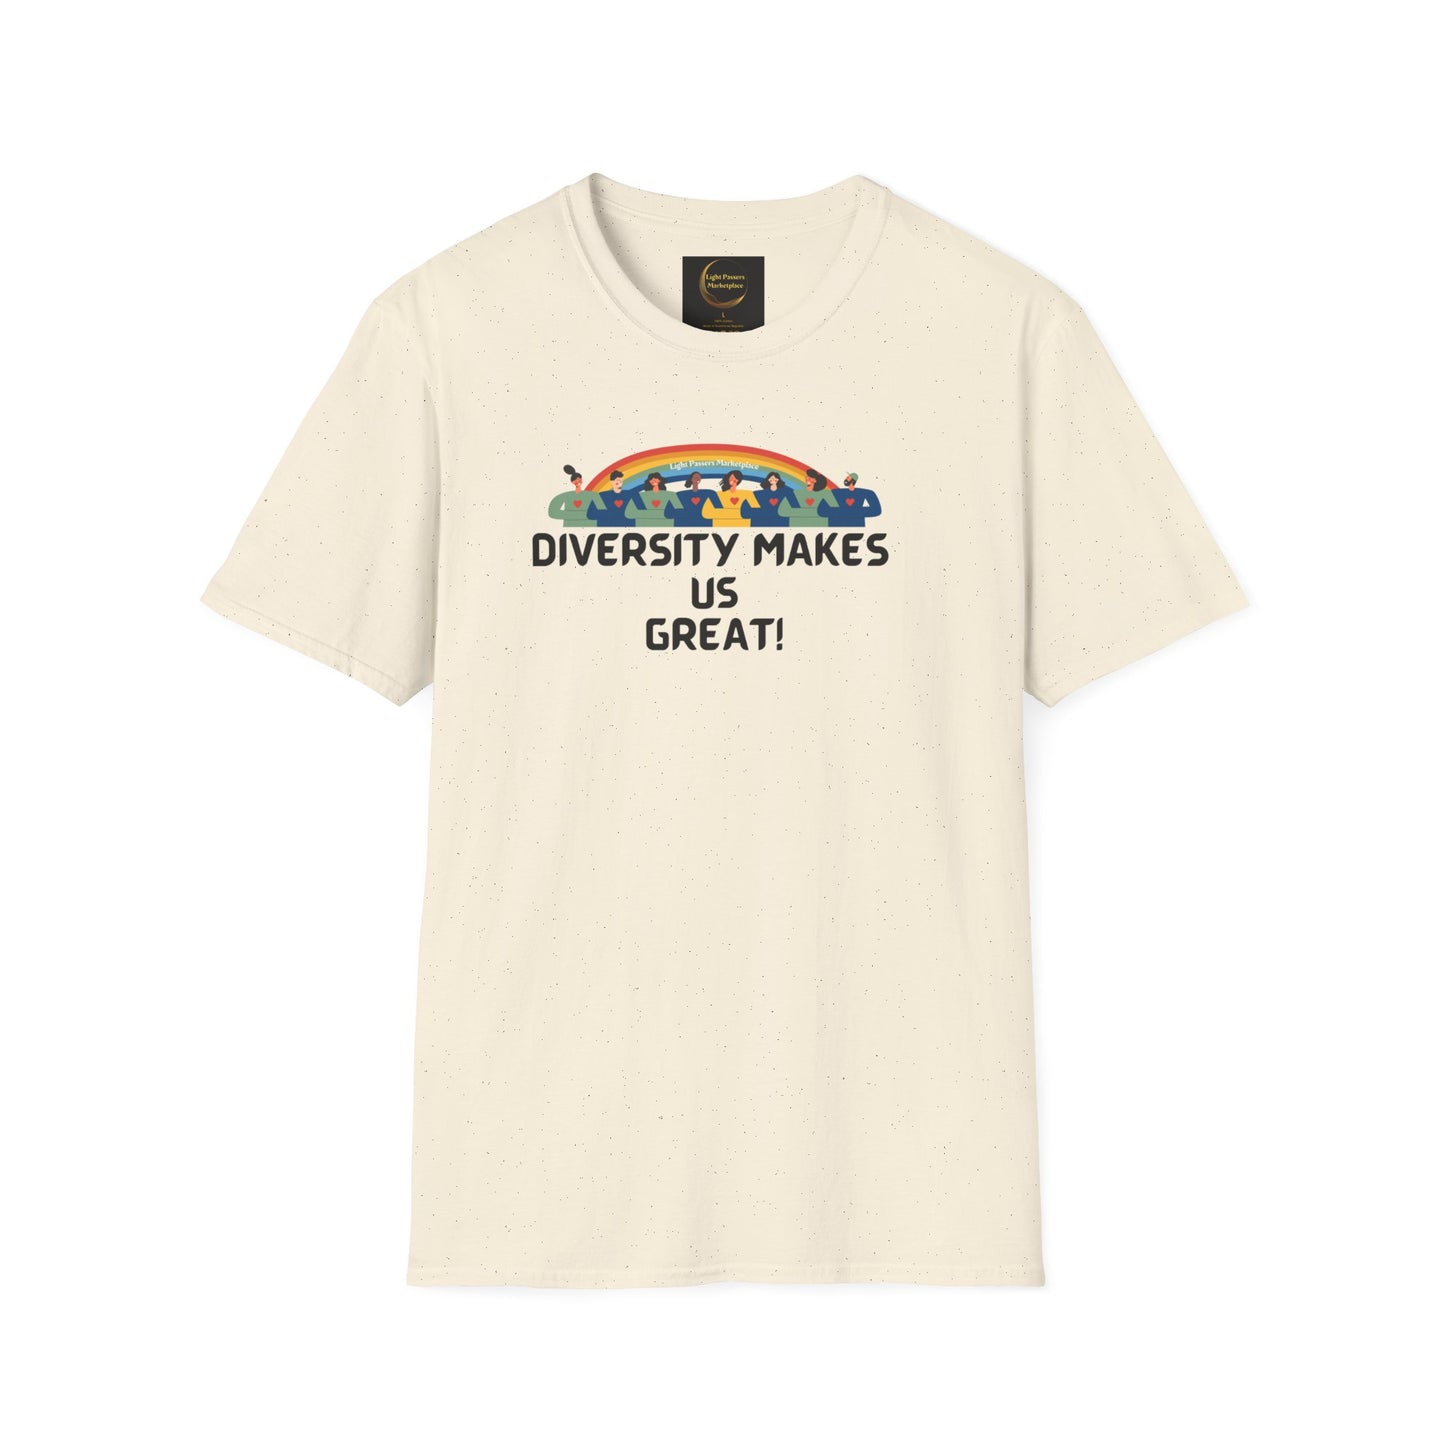 Light Passers Marketplace Diversity Makes Us Great! Unisex Gildan Soft Cotton T-shirt. Diversity, Simple Messages